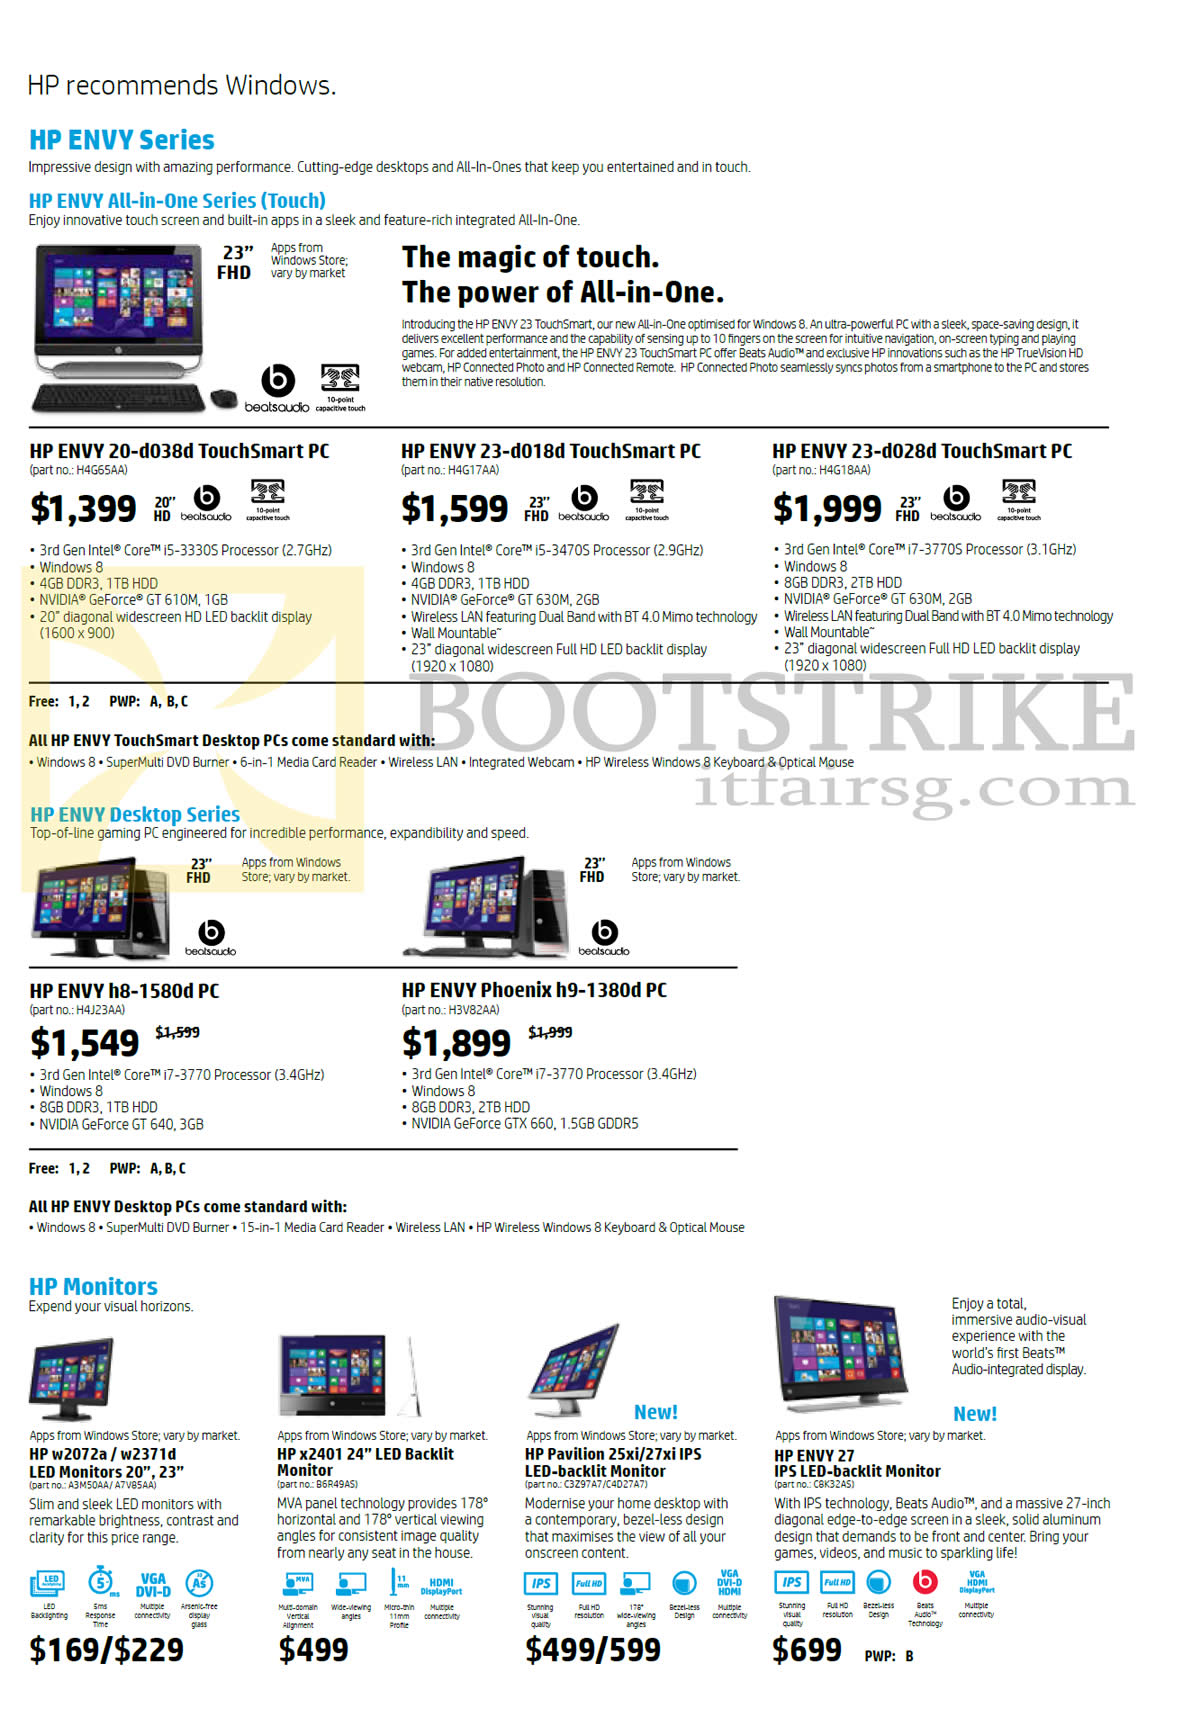 PC SHOW 2013 price list image brochure of HP Desktop PCs AIO Monitors, Envy 20-d038d, 23-d018d, 23-d028d, Envy H8-1580d, Phoenix H9-1380d, W2072a, W2371d, X2401, Envy 27, Pavilion 25xi, 27xi